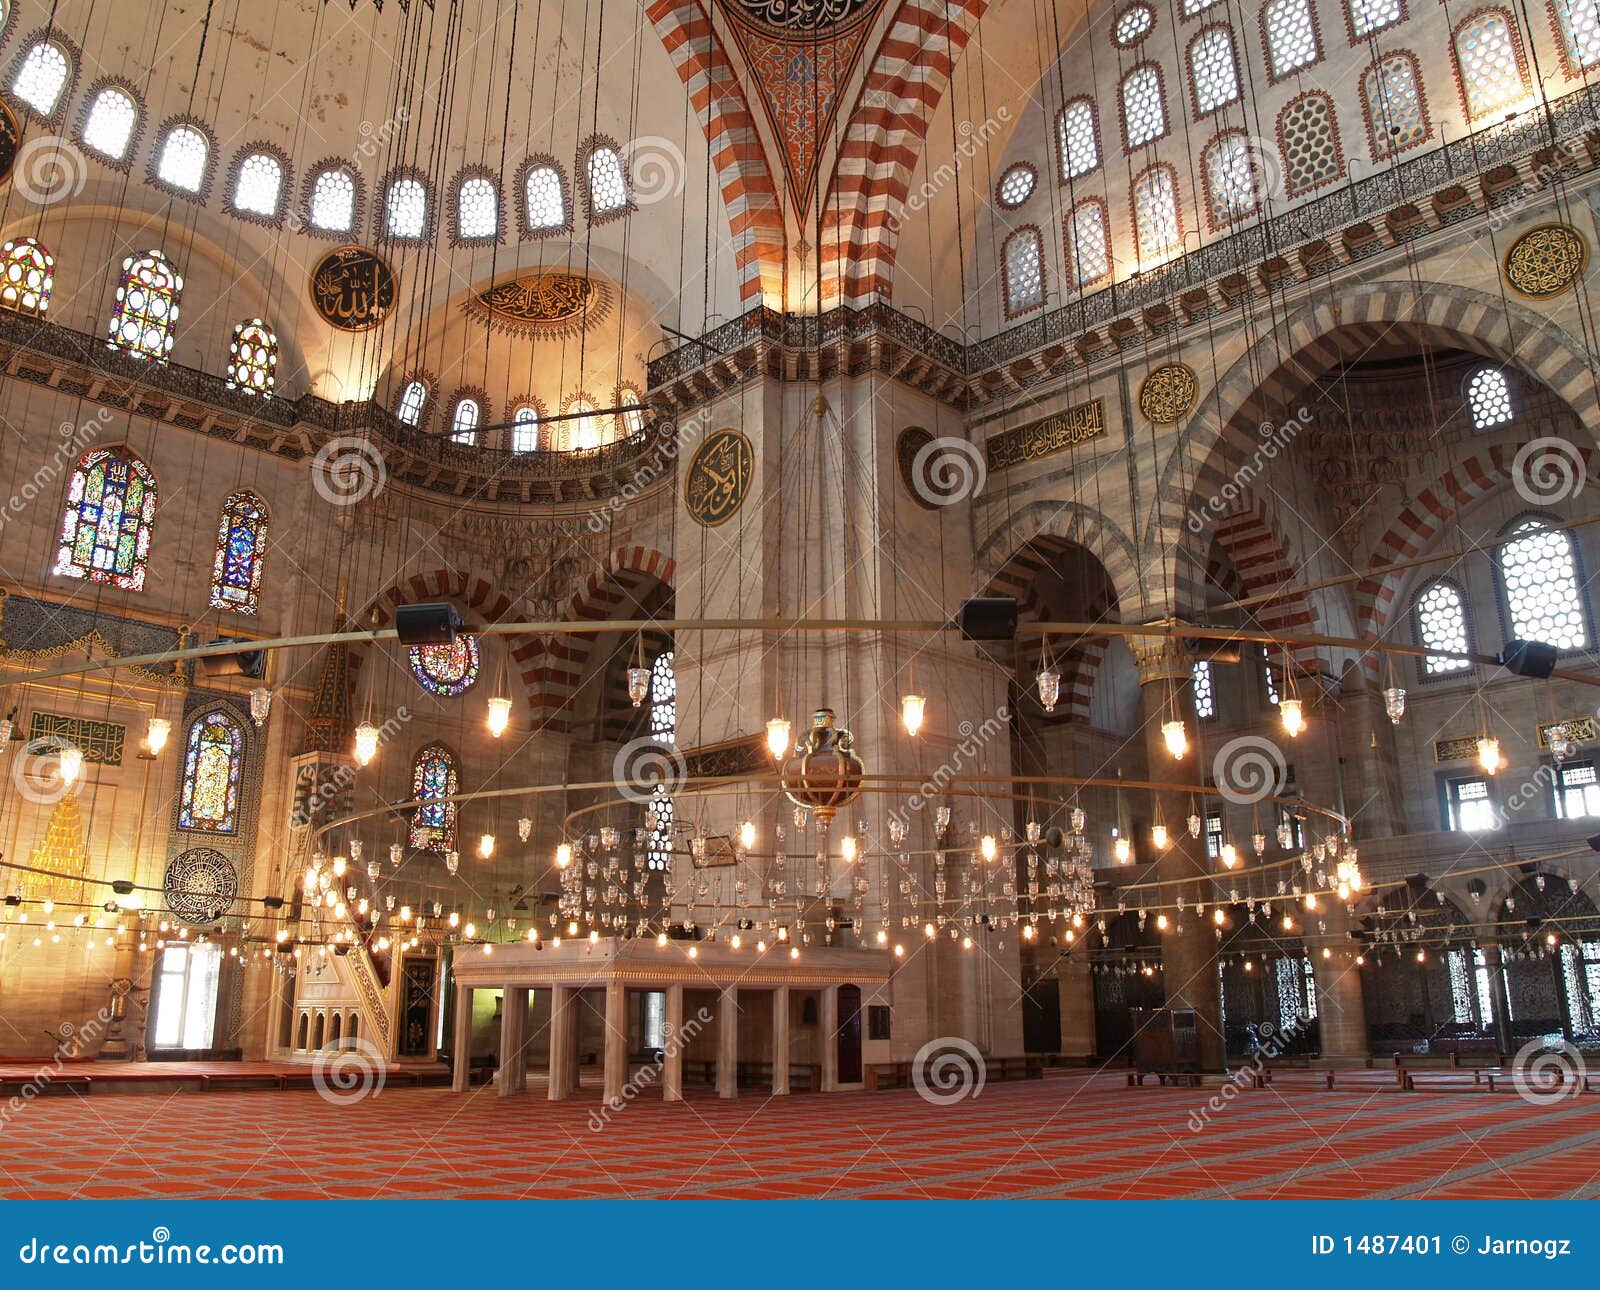 suleymaniye mosque in istanbul, turkey